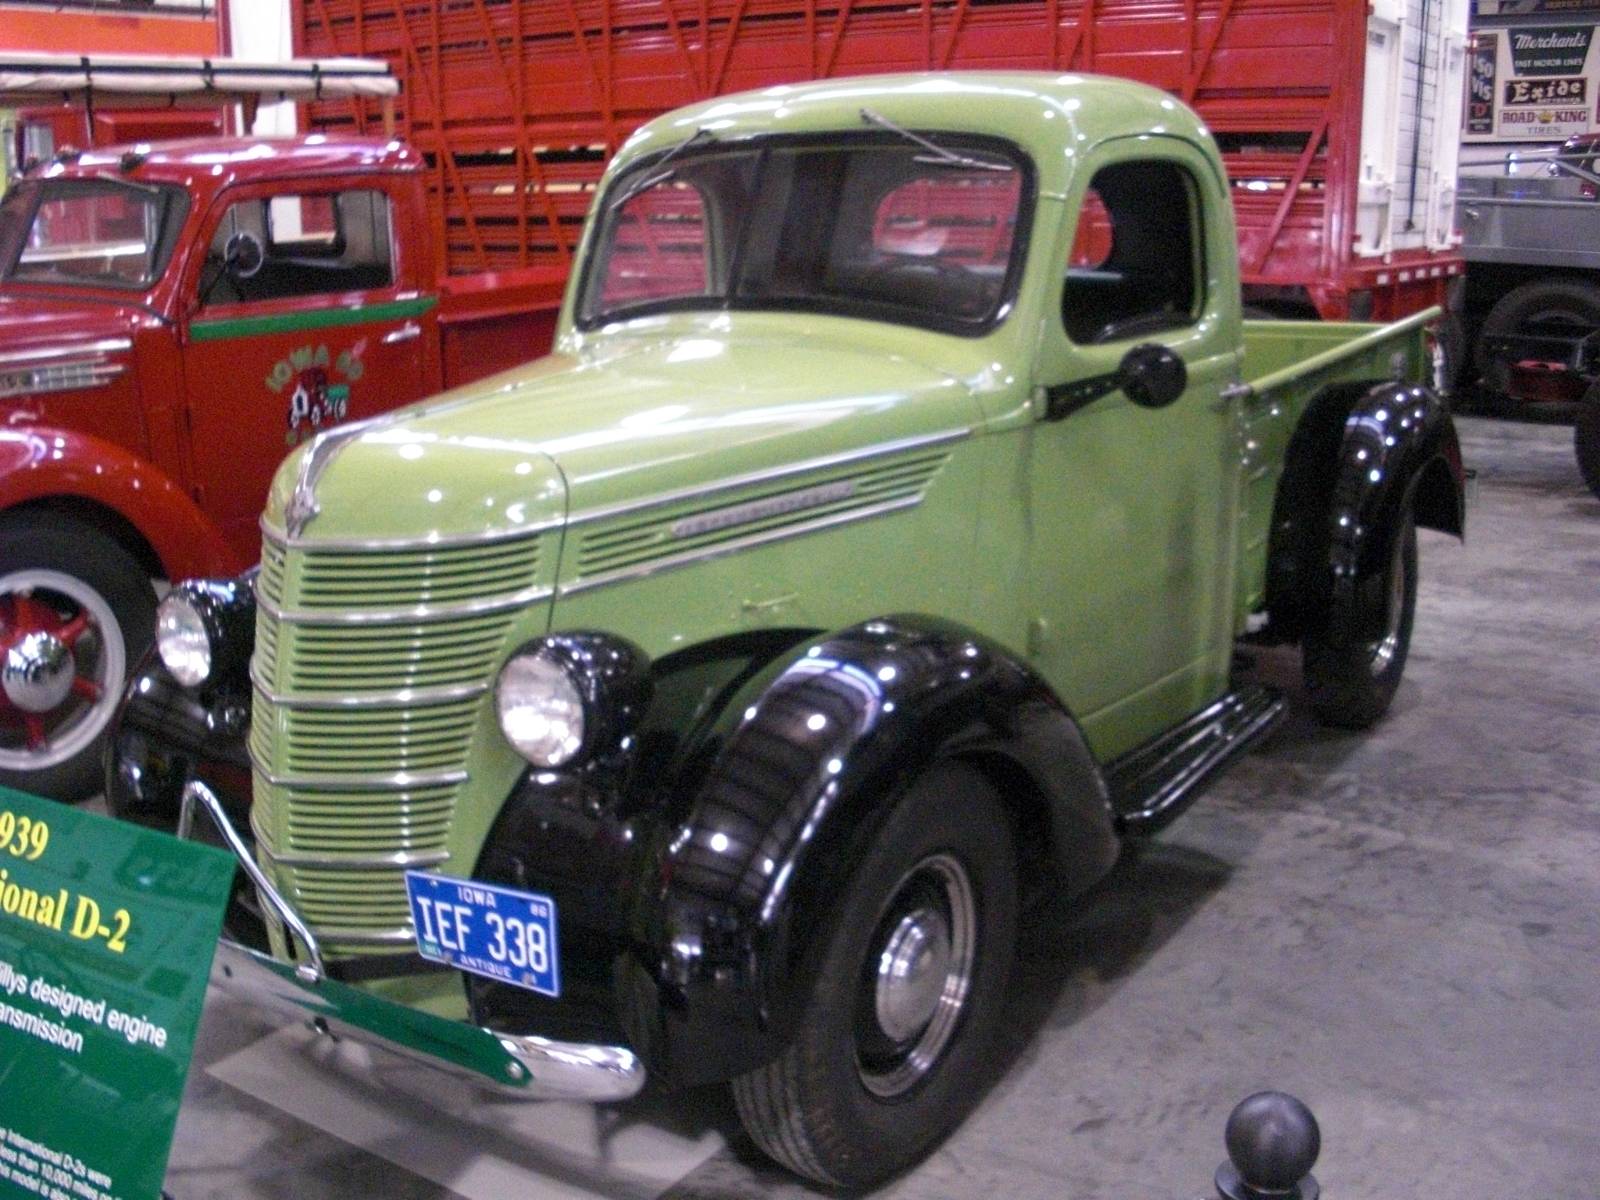 1939 D-2 #1